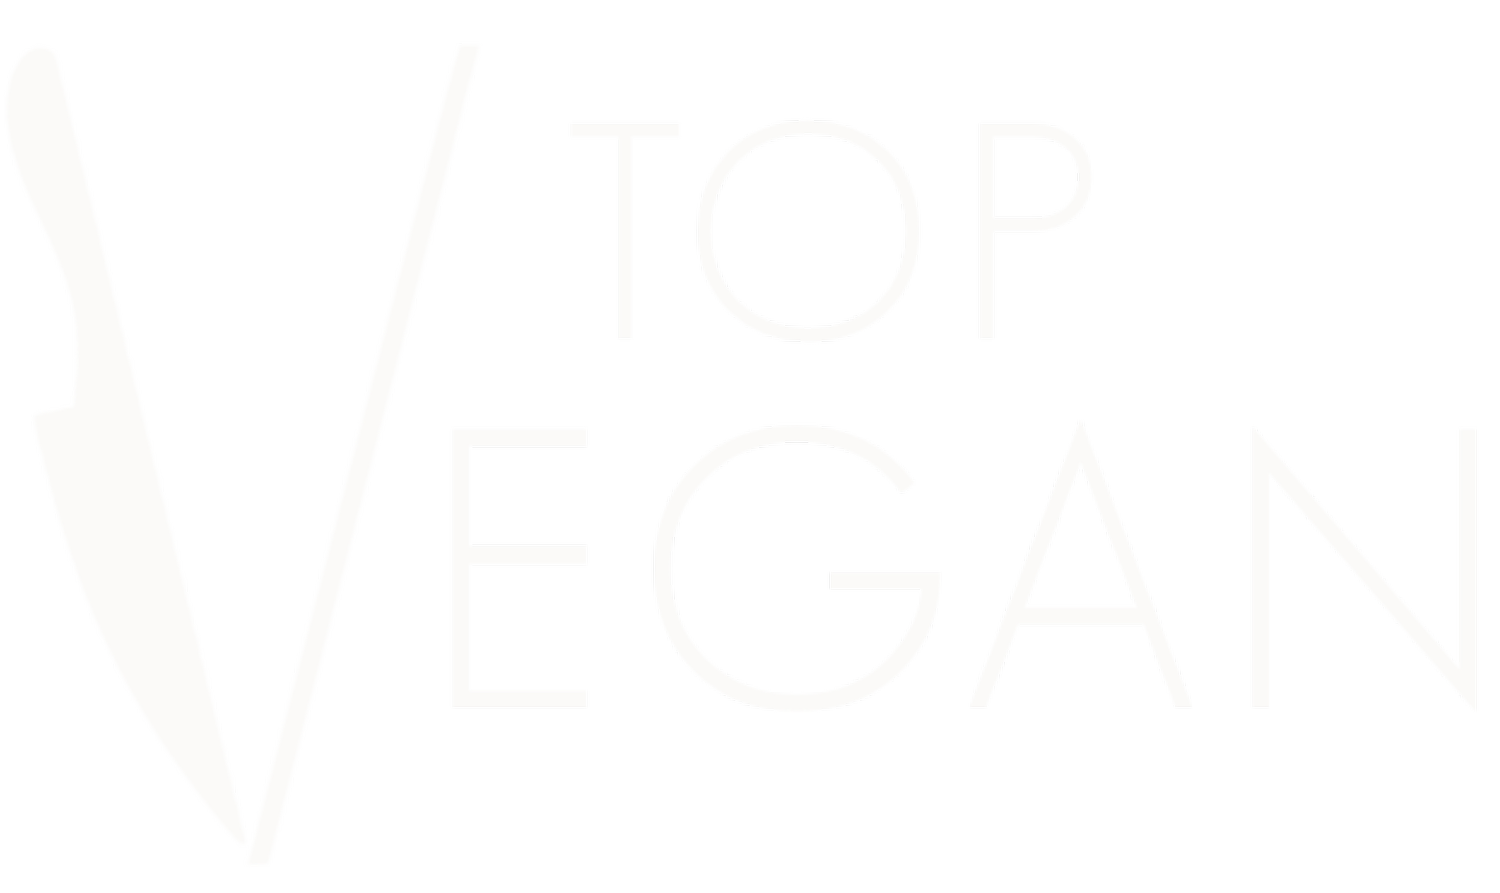 Top Vegan